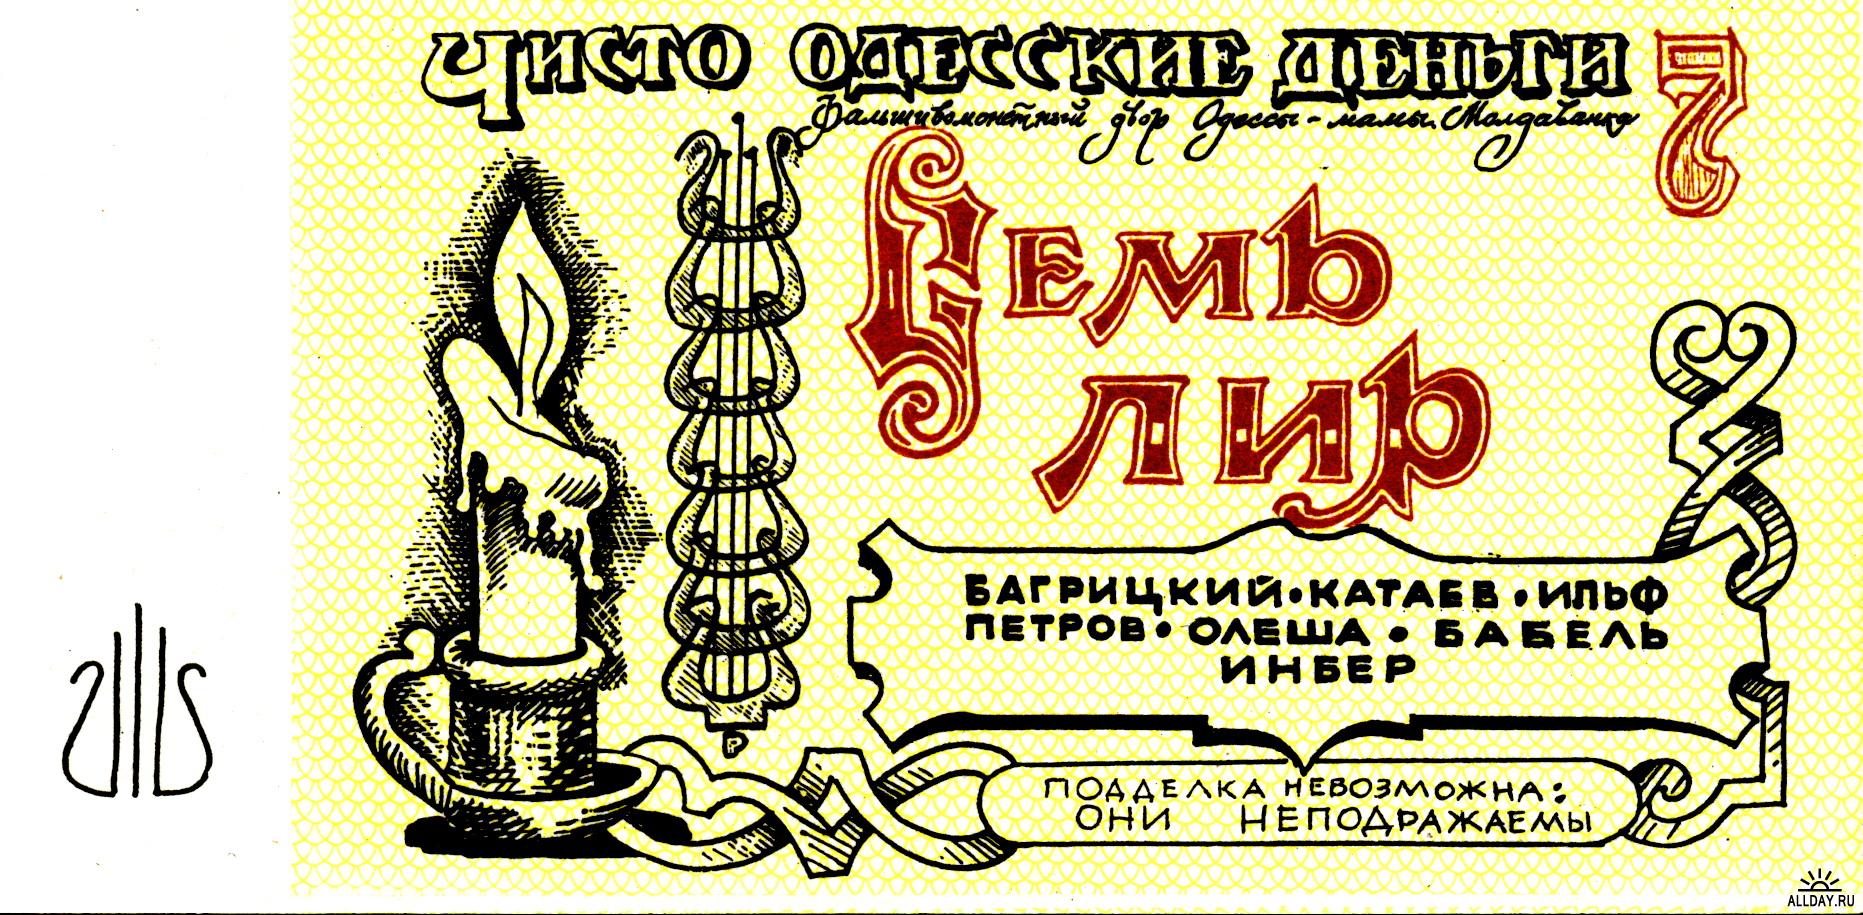 Одесские юмористические деньги / ©Flickr